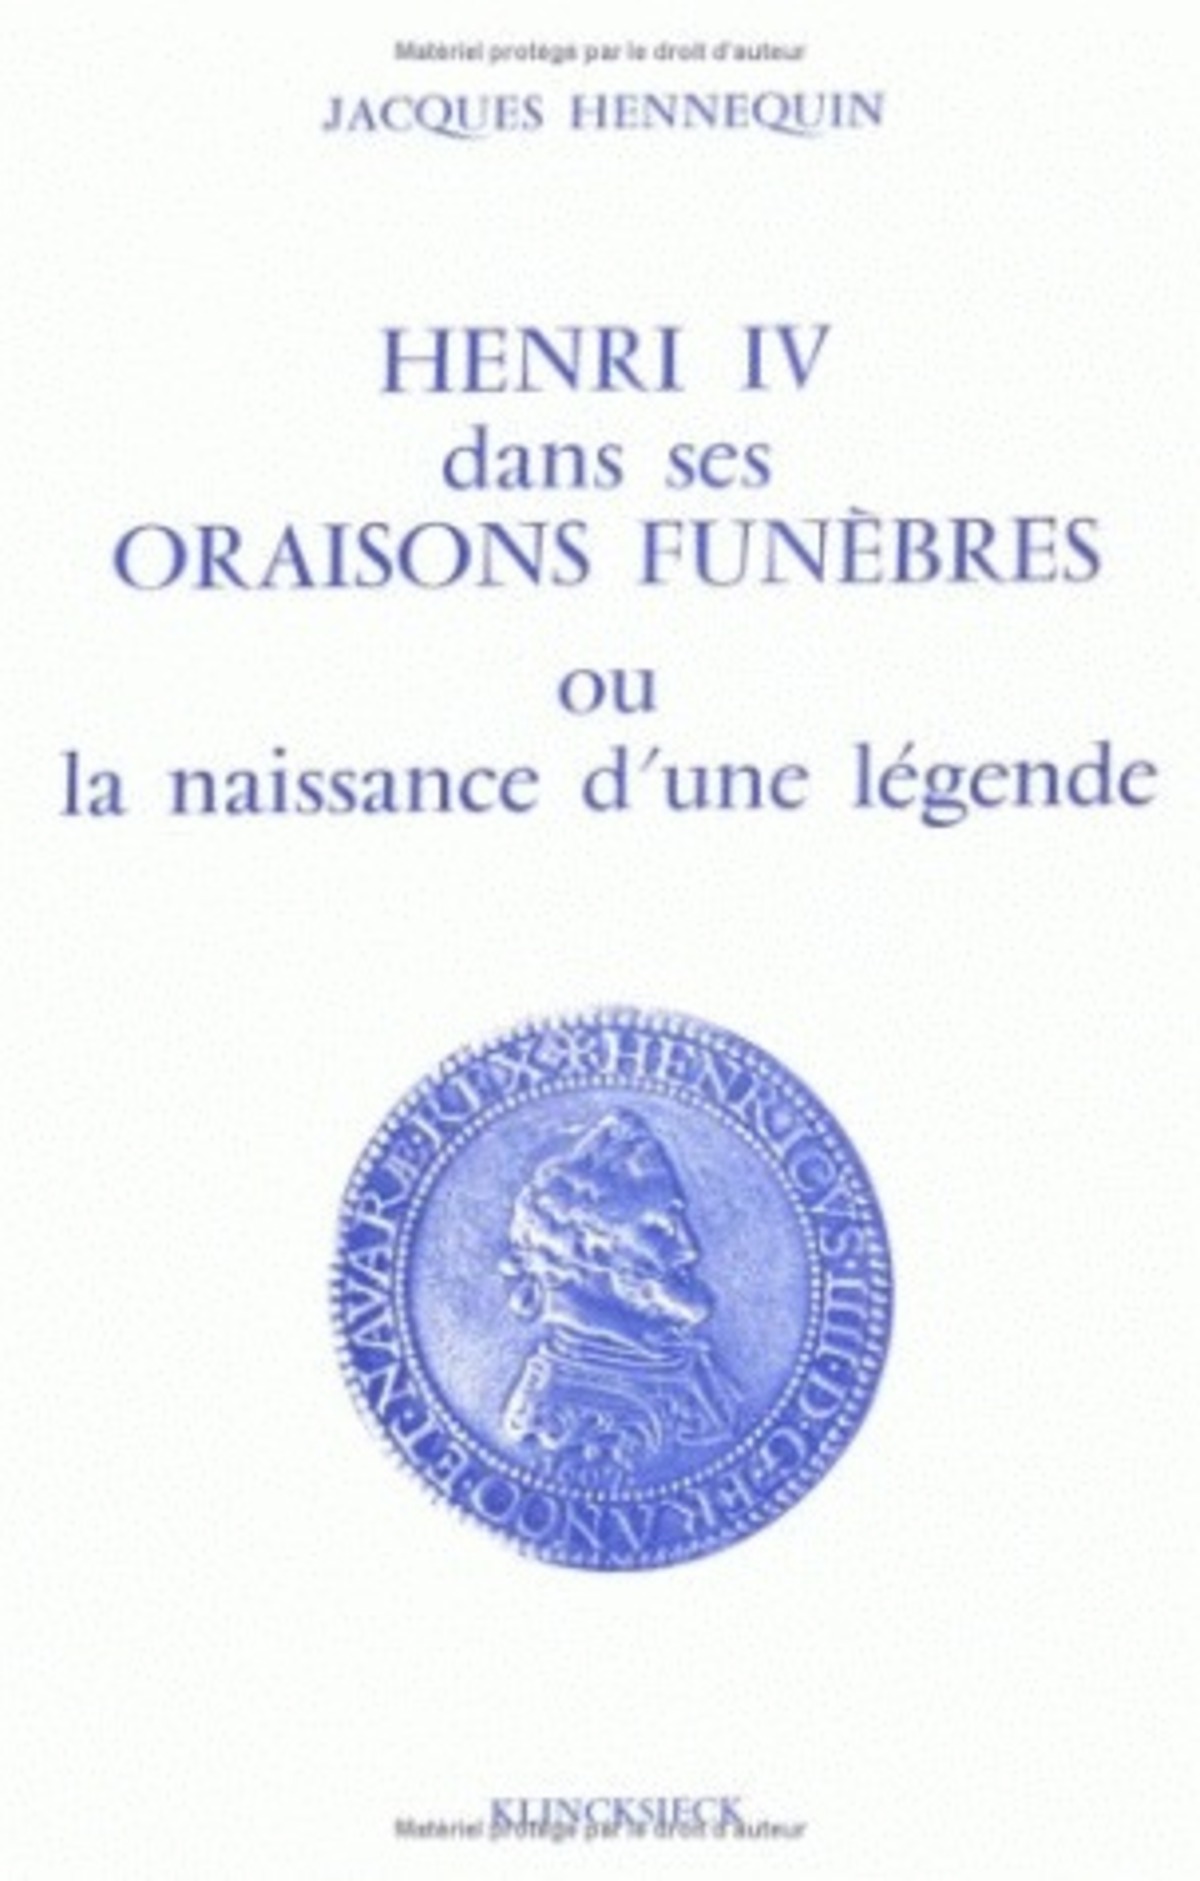 Henri IV dans ses oraisons funèbres, ou la naissance d'une légende